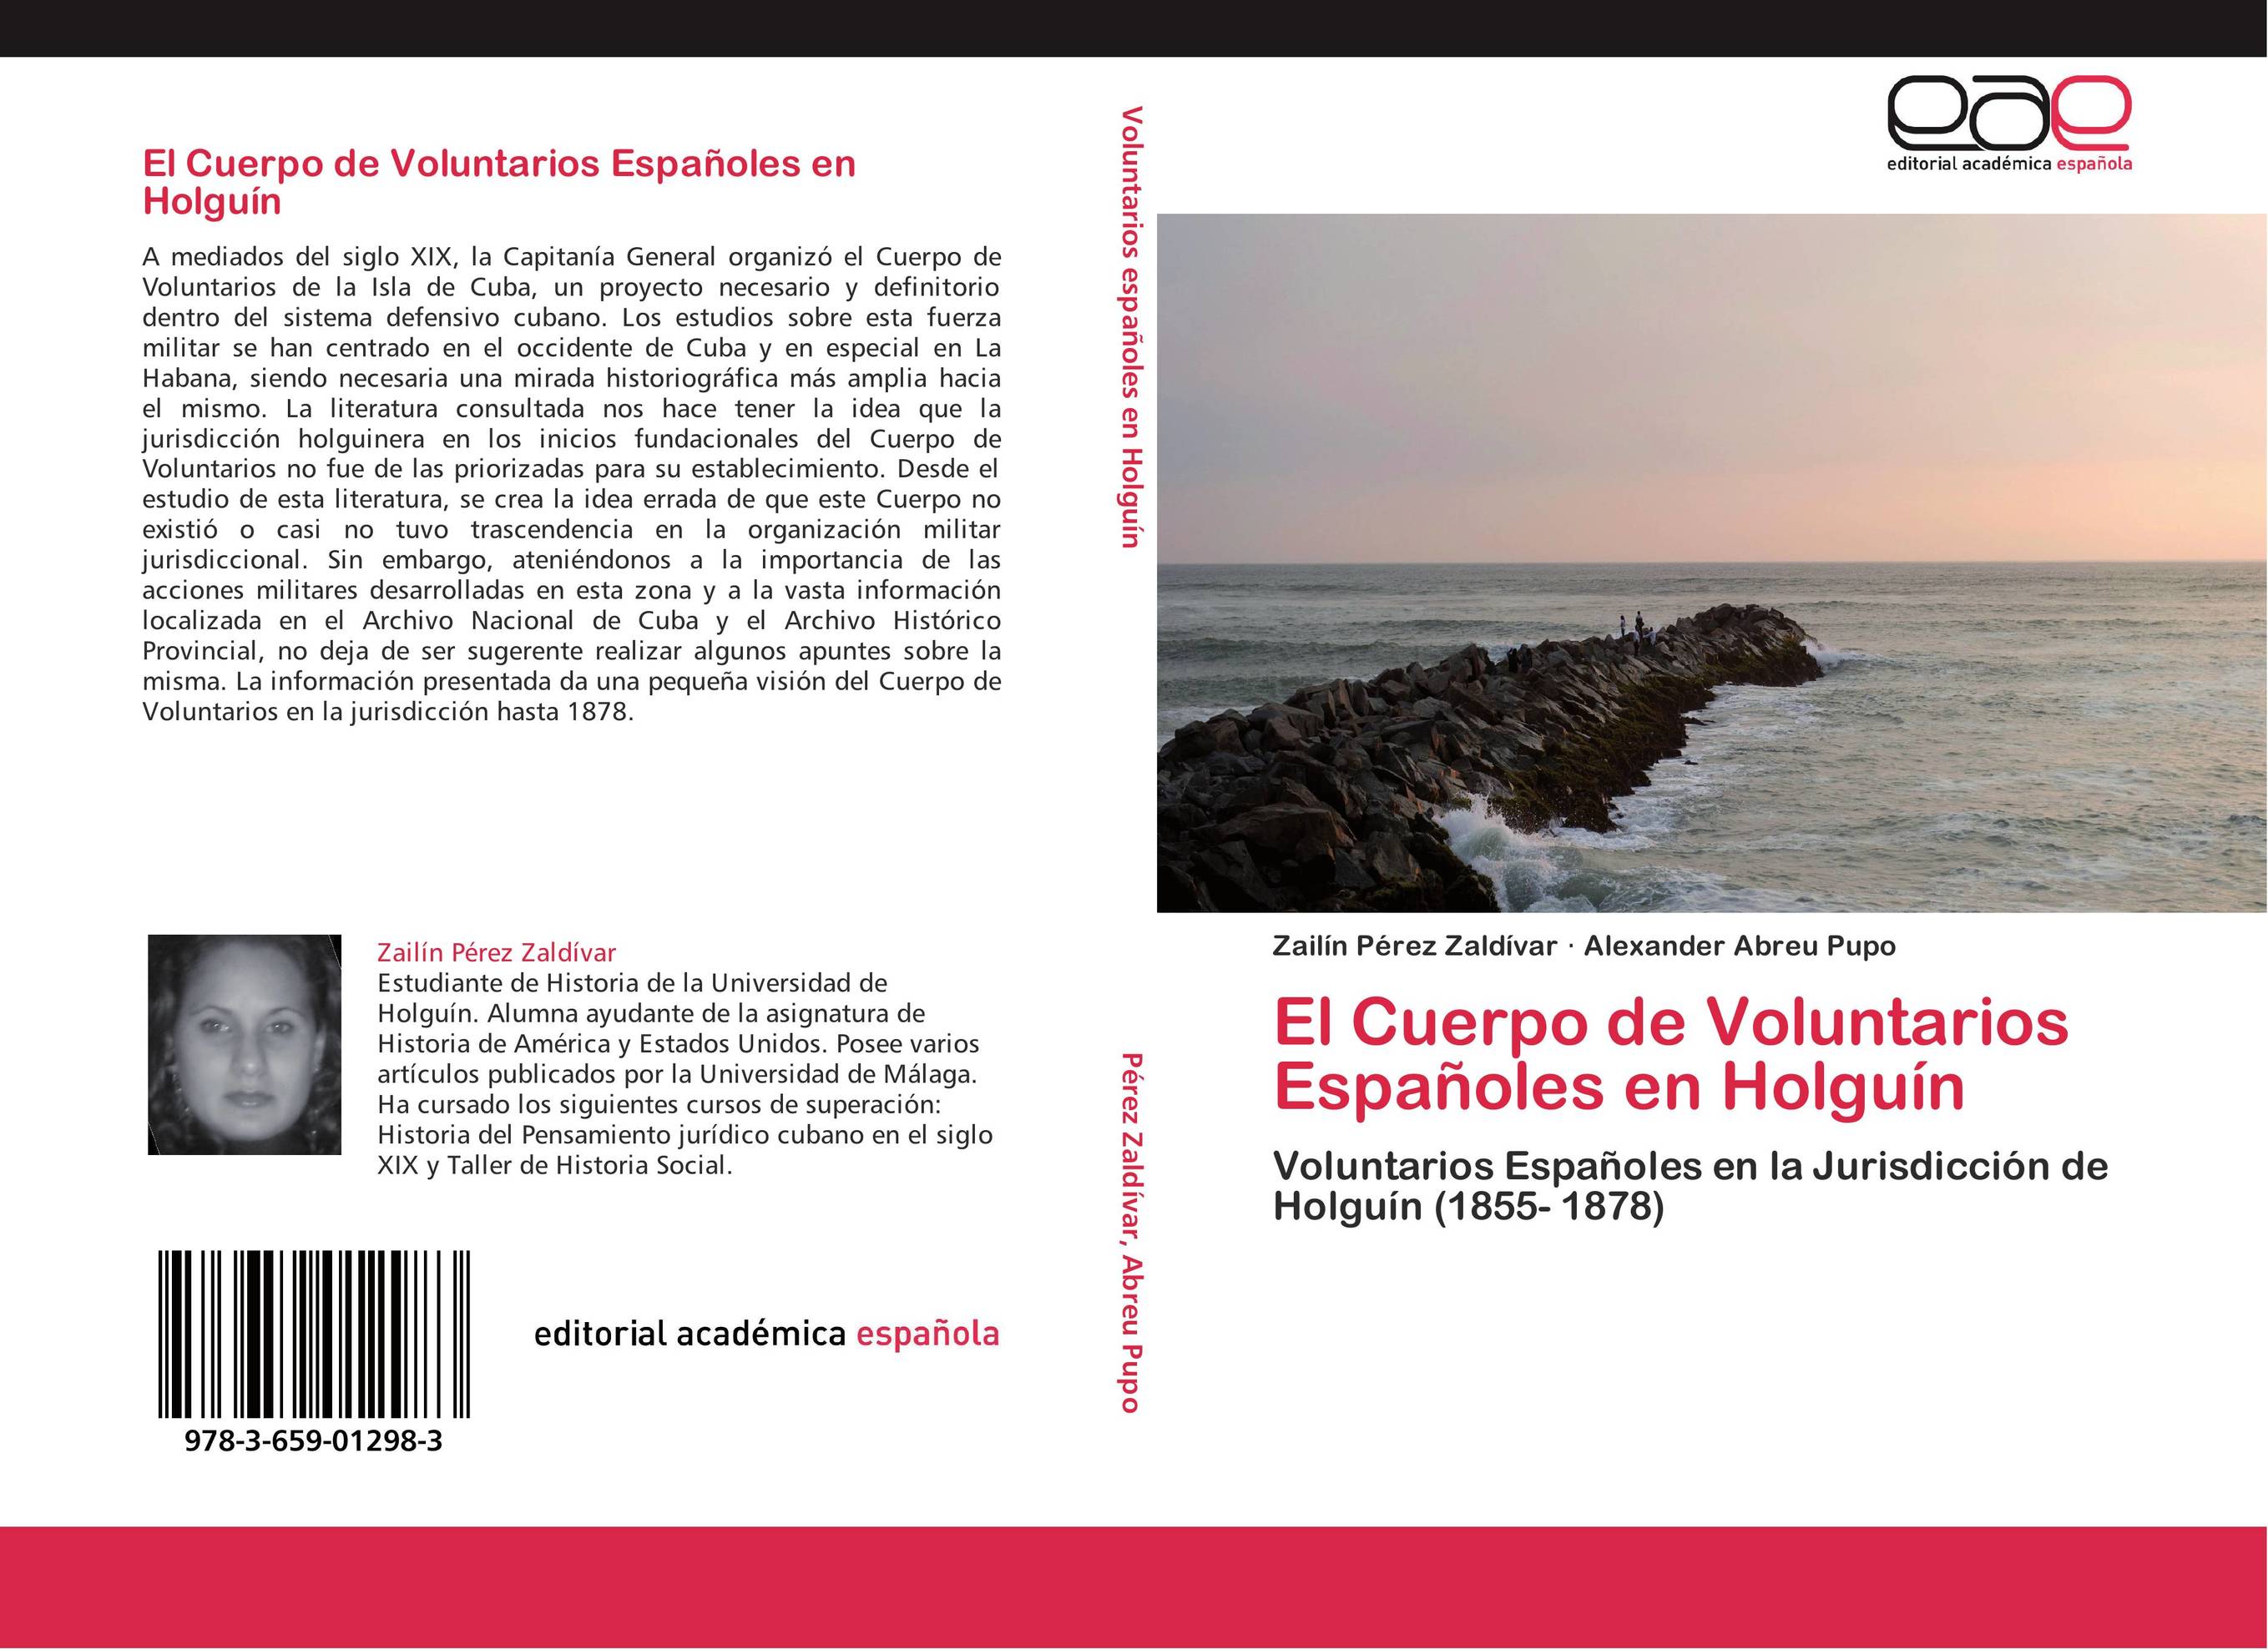 El Cuerpo de Voluntarios Españoles en Holguín